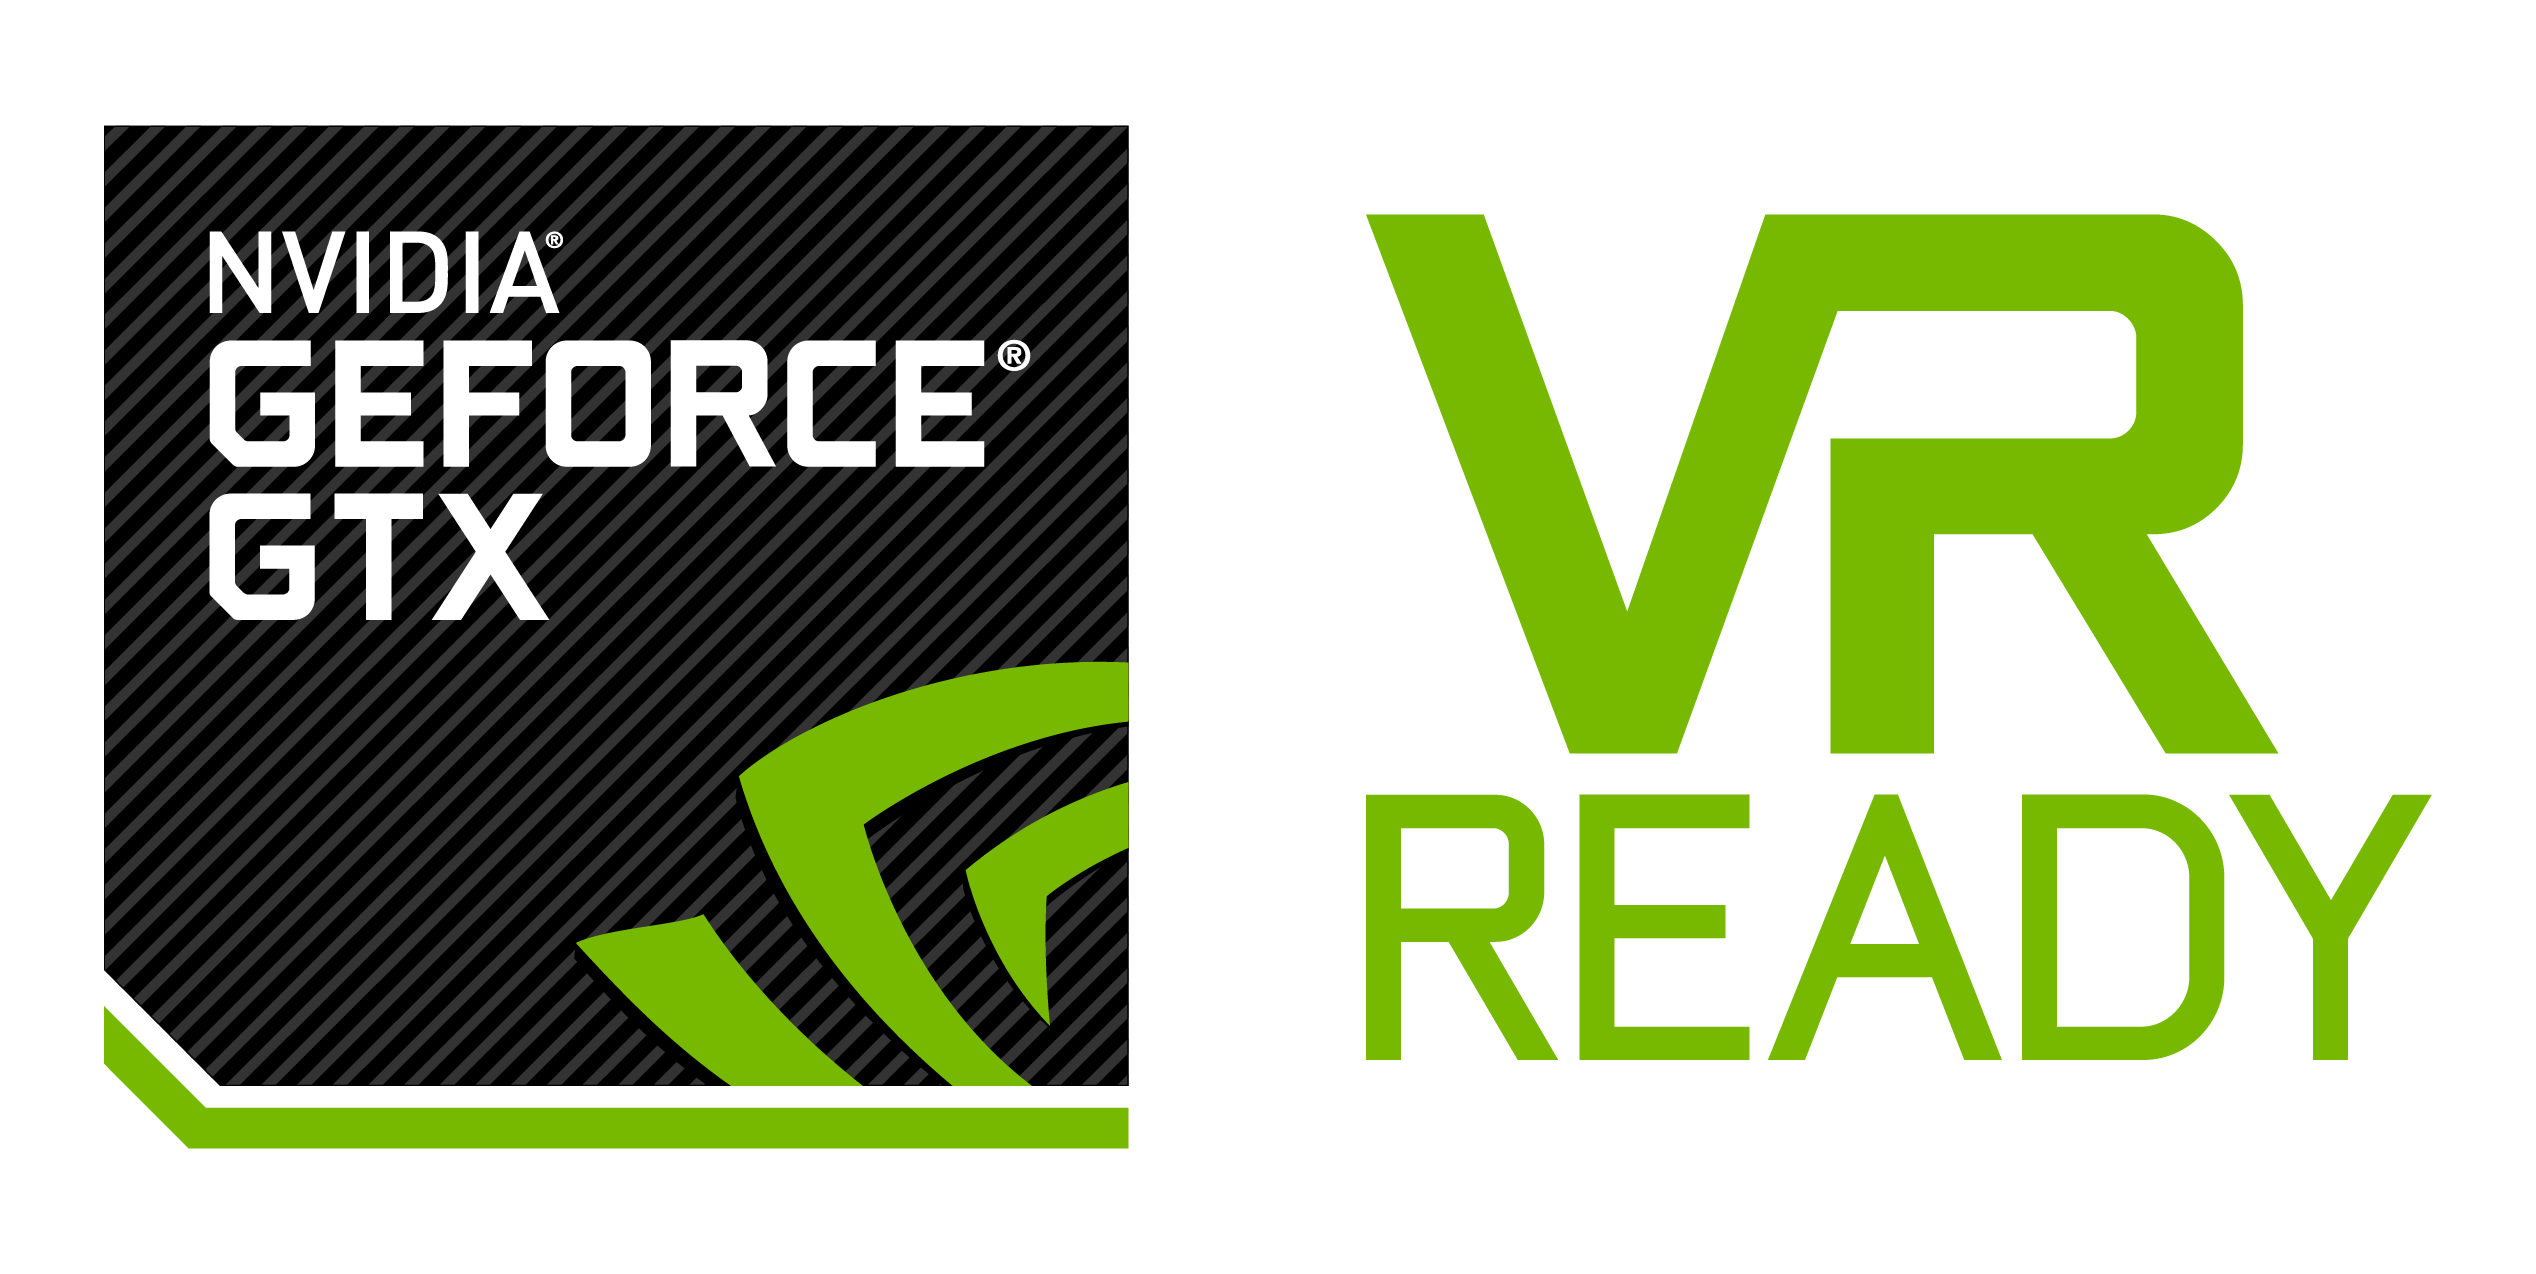 NV_GF_GTX_VR_READY_Logo_vert_RGB_V2